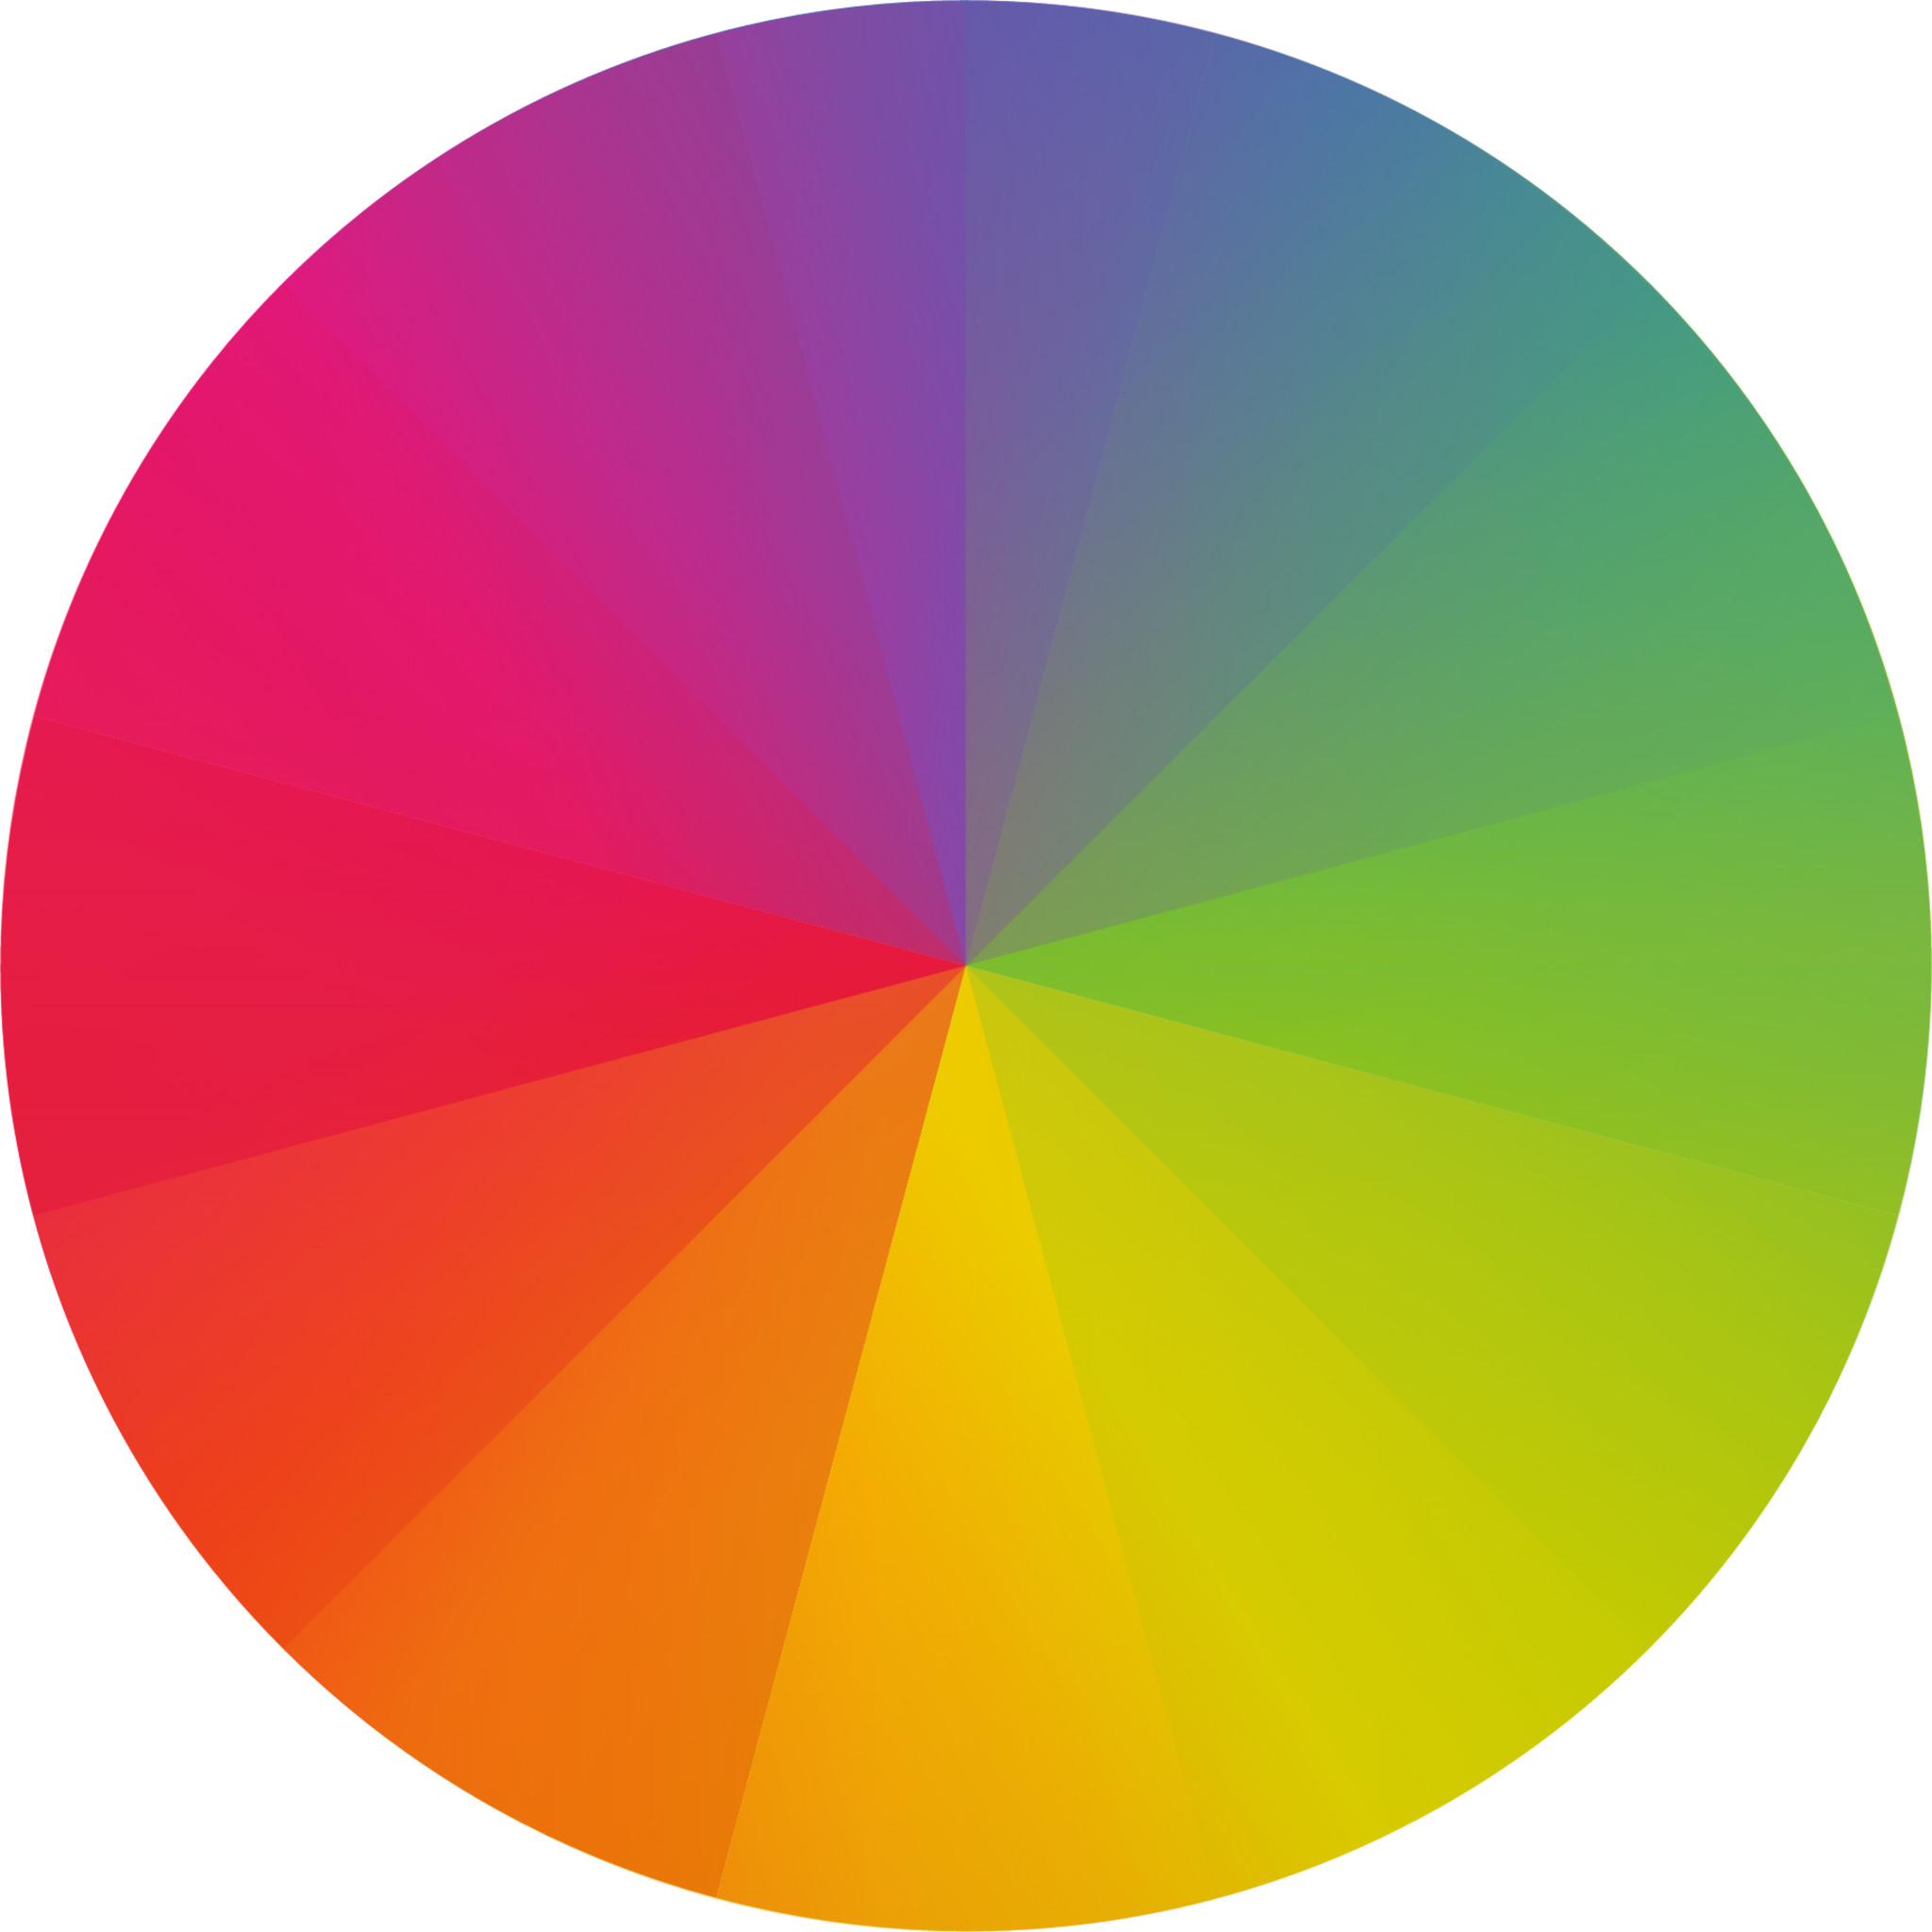 color management icon